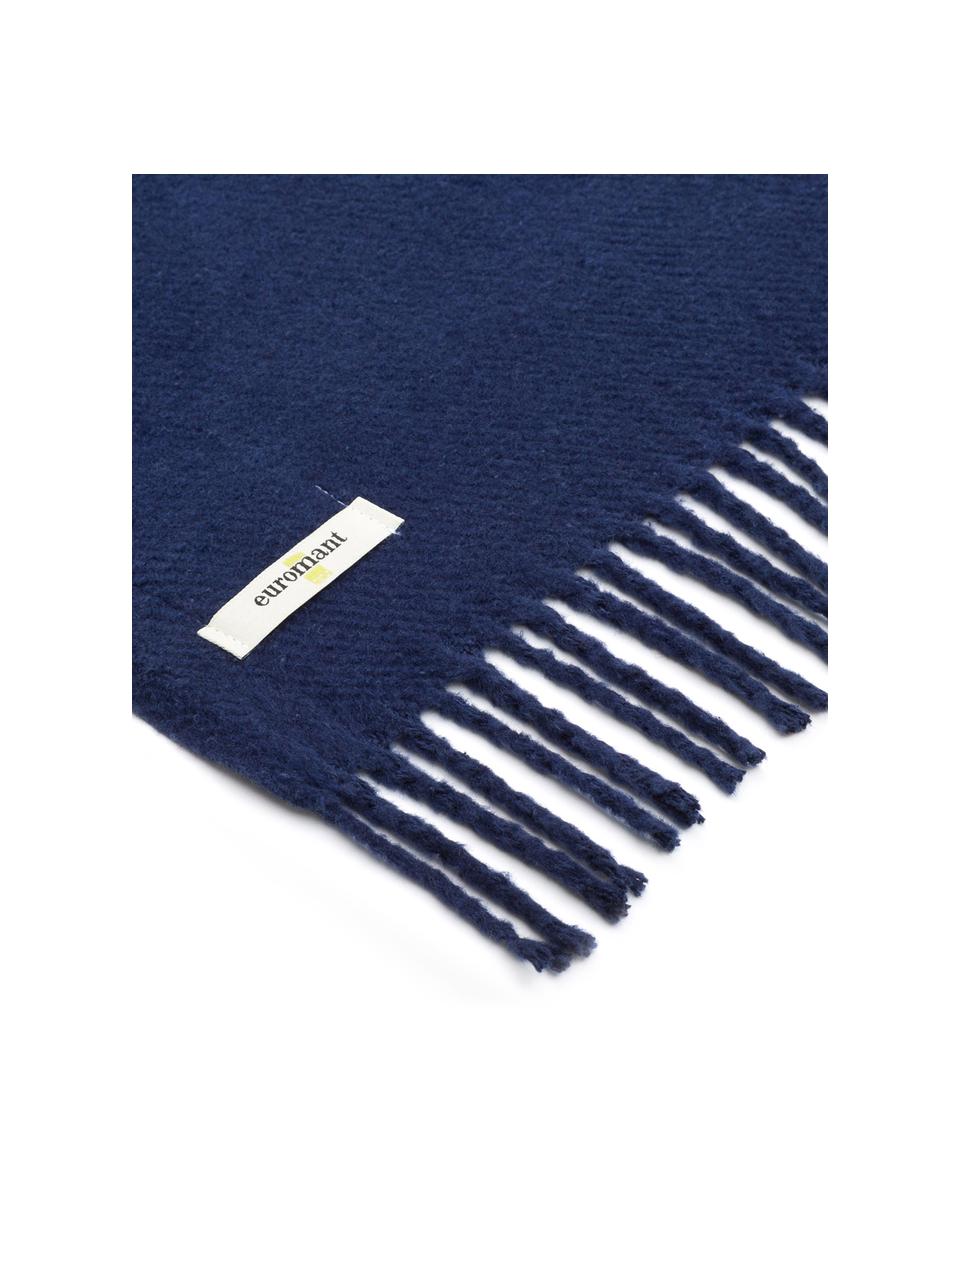 Plaid en coton bleu foncé Plain, 50 % coton, 50 % acrylique, Bleu foncé, larg. 140 x long. 180 cm